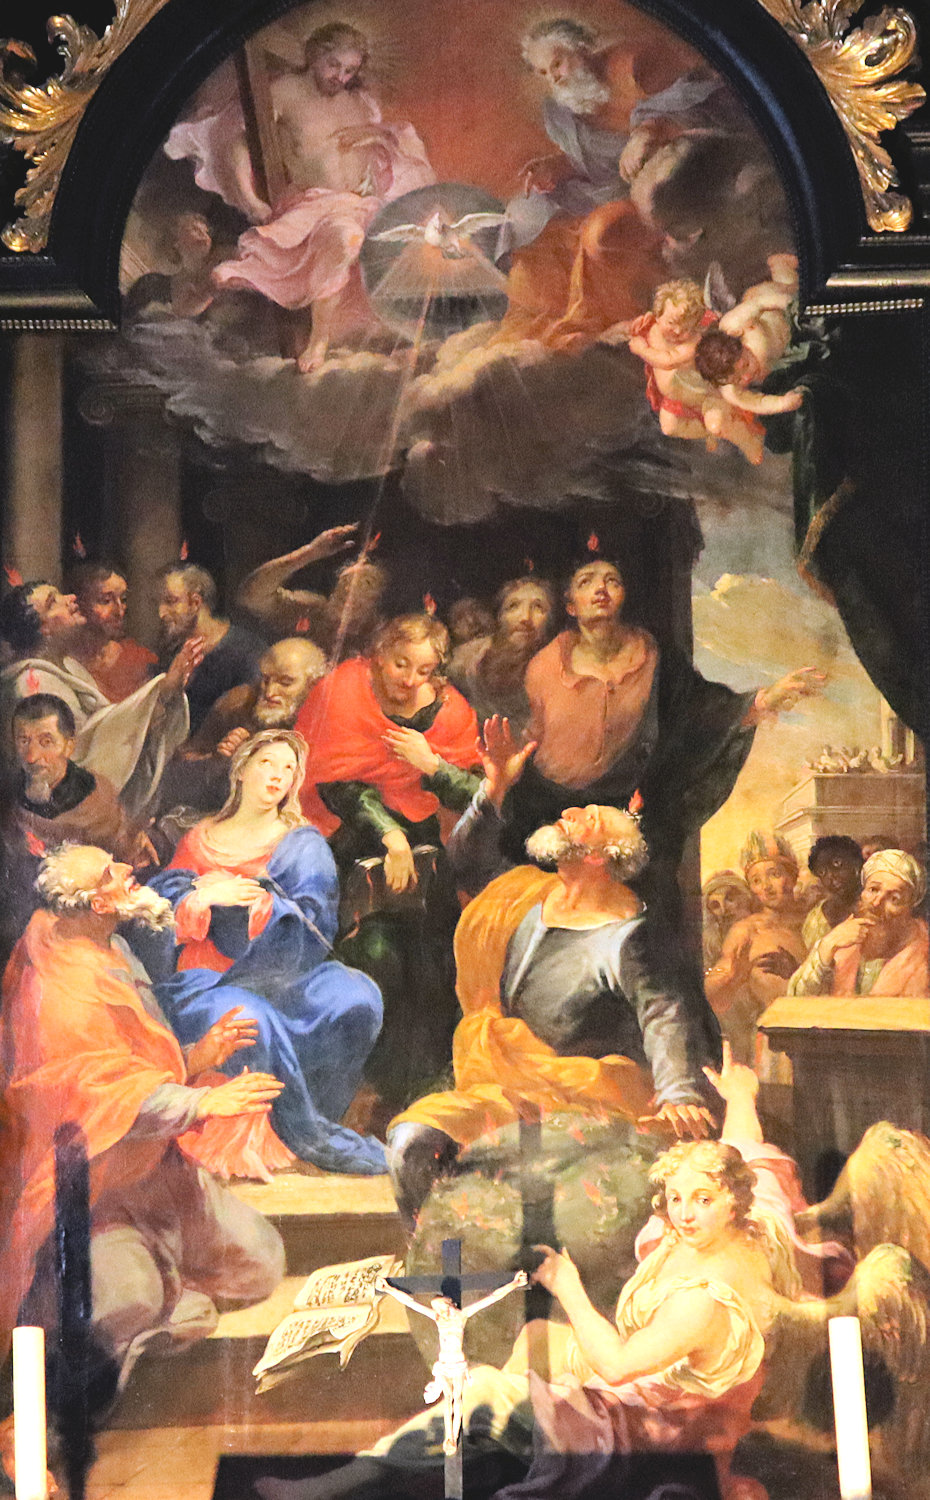 Meinrad Guggenbichler: Der Heilige Geist kommt auf Maria und die Apostel herab, Altarbild, um 1680, in der Kirche des ehemaligen Klosters Mondsee in Oberösterreich